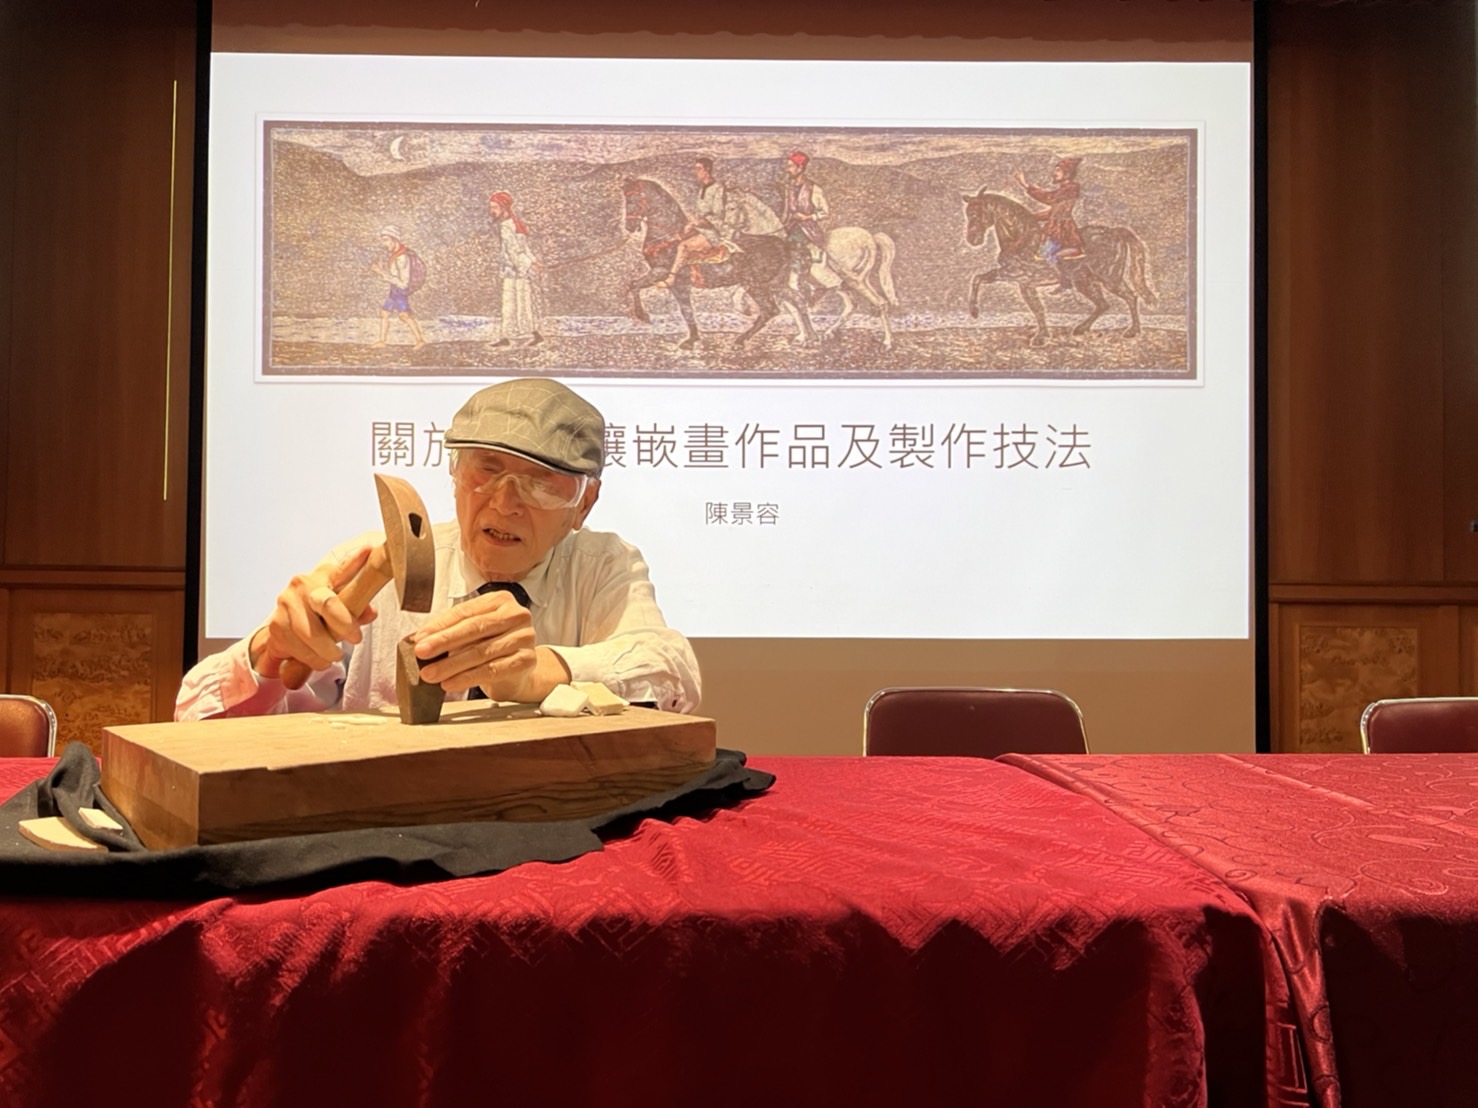 將近九十高齡的國寶級大師陳景容還在論壇上當場示範馬賽克鑲嵌畫功夫，現場近百位民眾親眼見識大師畫工，大為驚嘆。